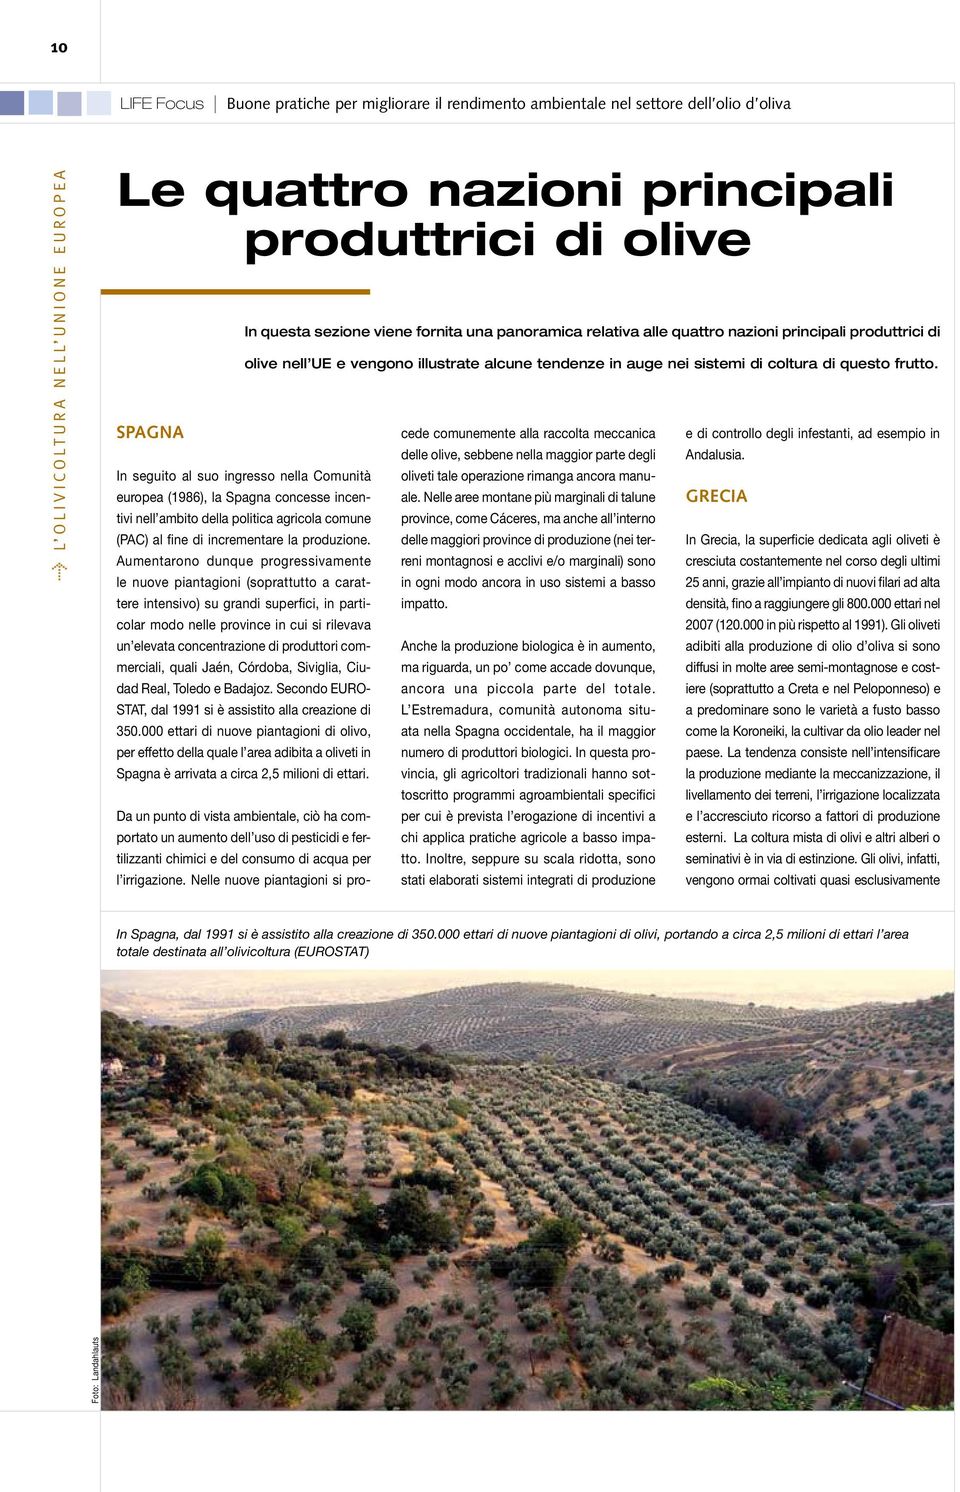 Le aziende olivicole variano da molto piccole (meno di 0,5 ha) a molto grandi (oltre 500 ha) e le piantagioni da tradizionali e scarsamente intensive a intensive e con un elevato grado di